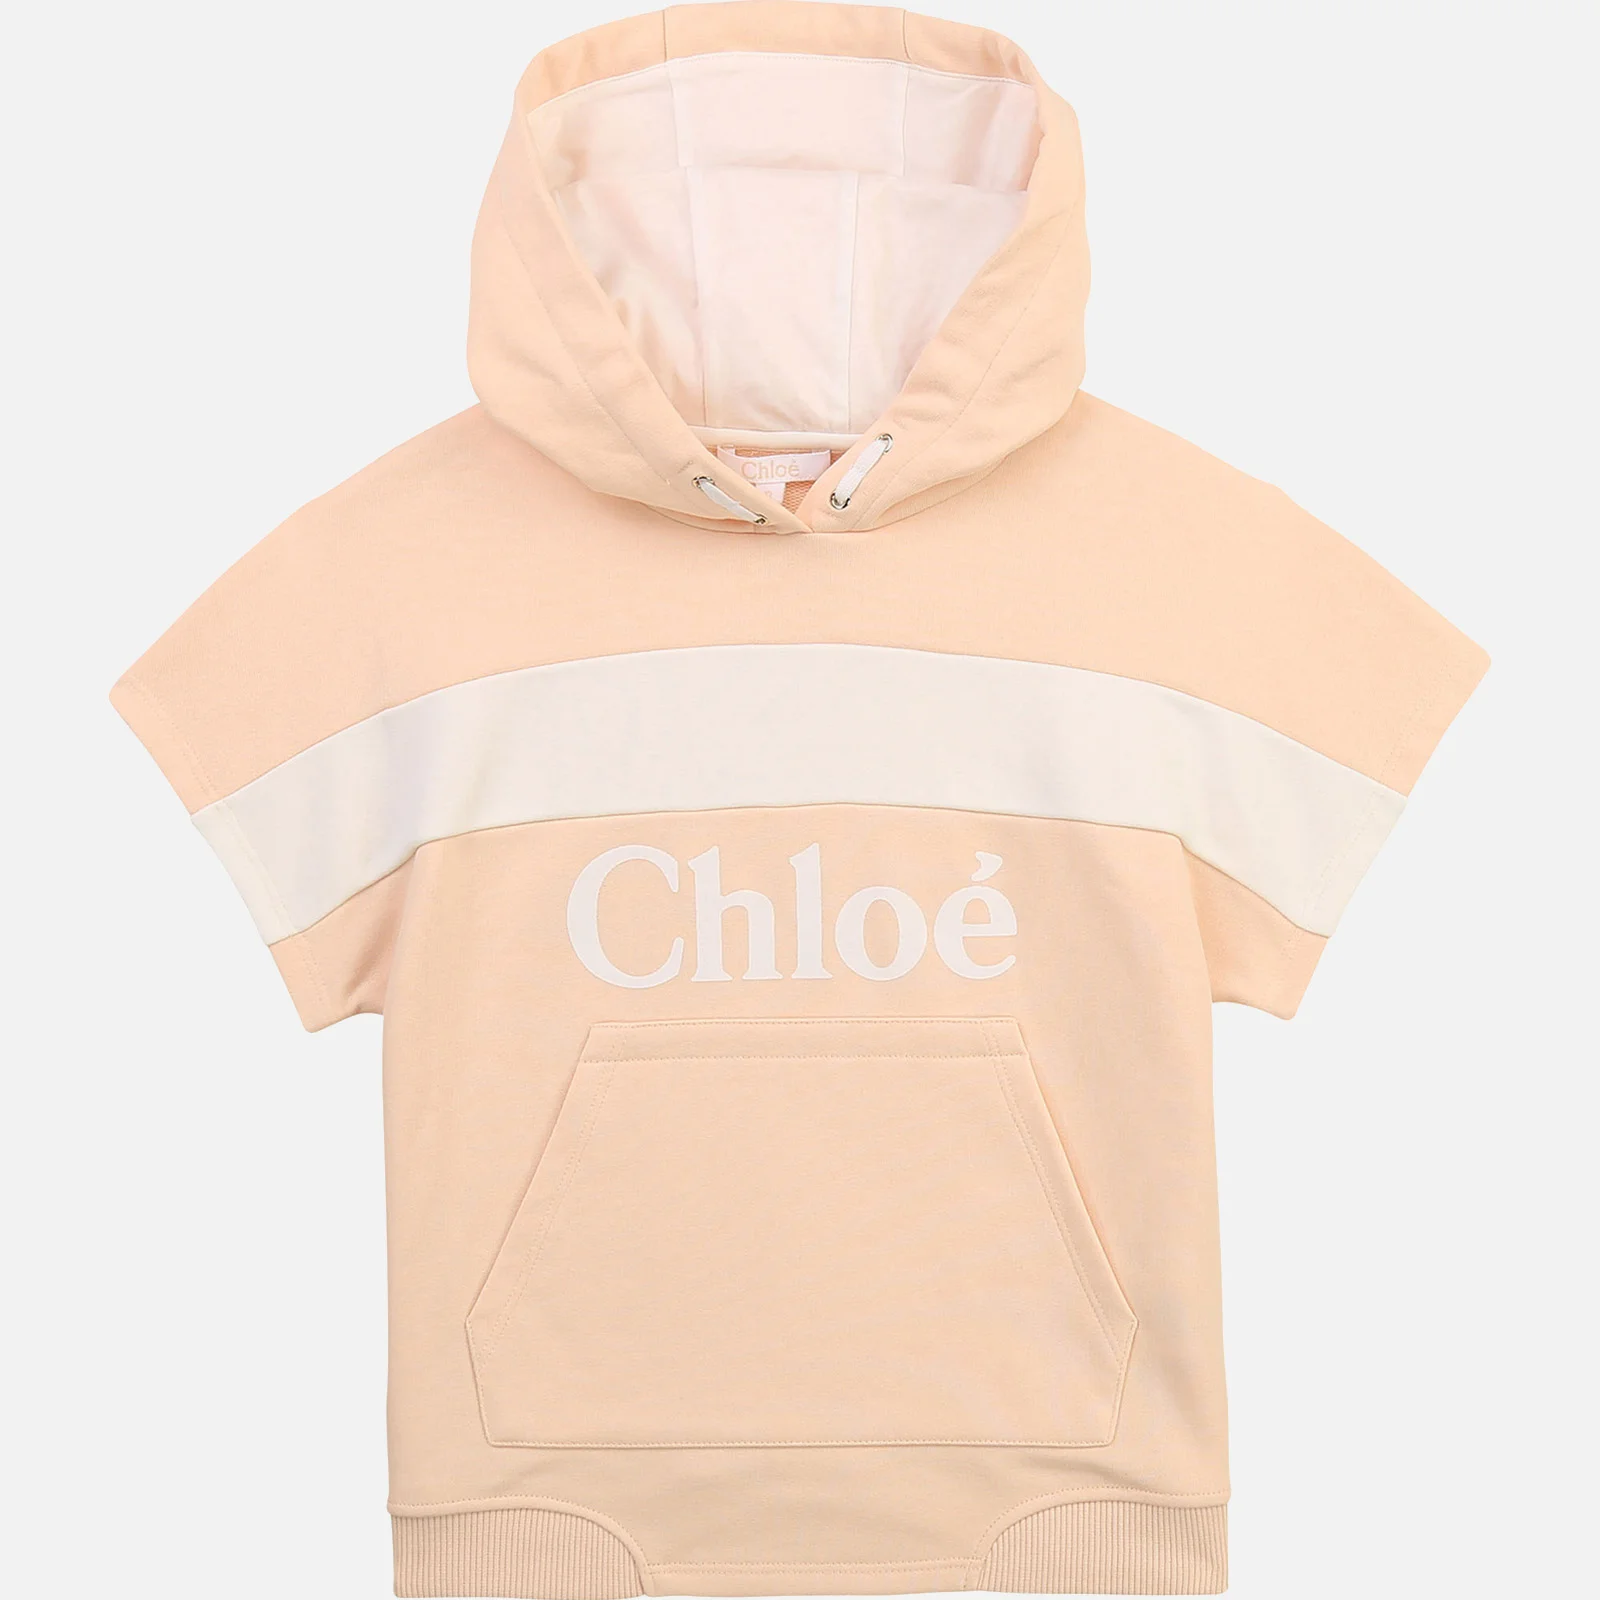 Chloe Girls' Hooded Stripe Sweatshirt - Pale Pink Image 1